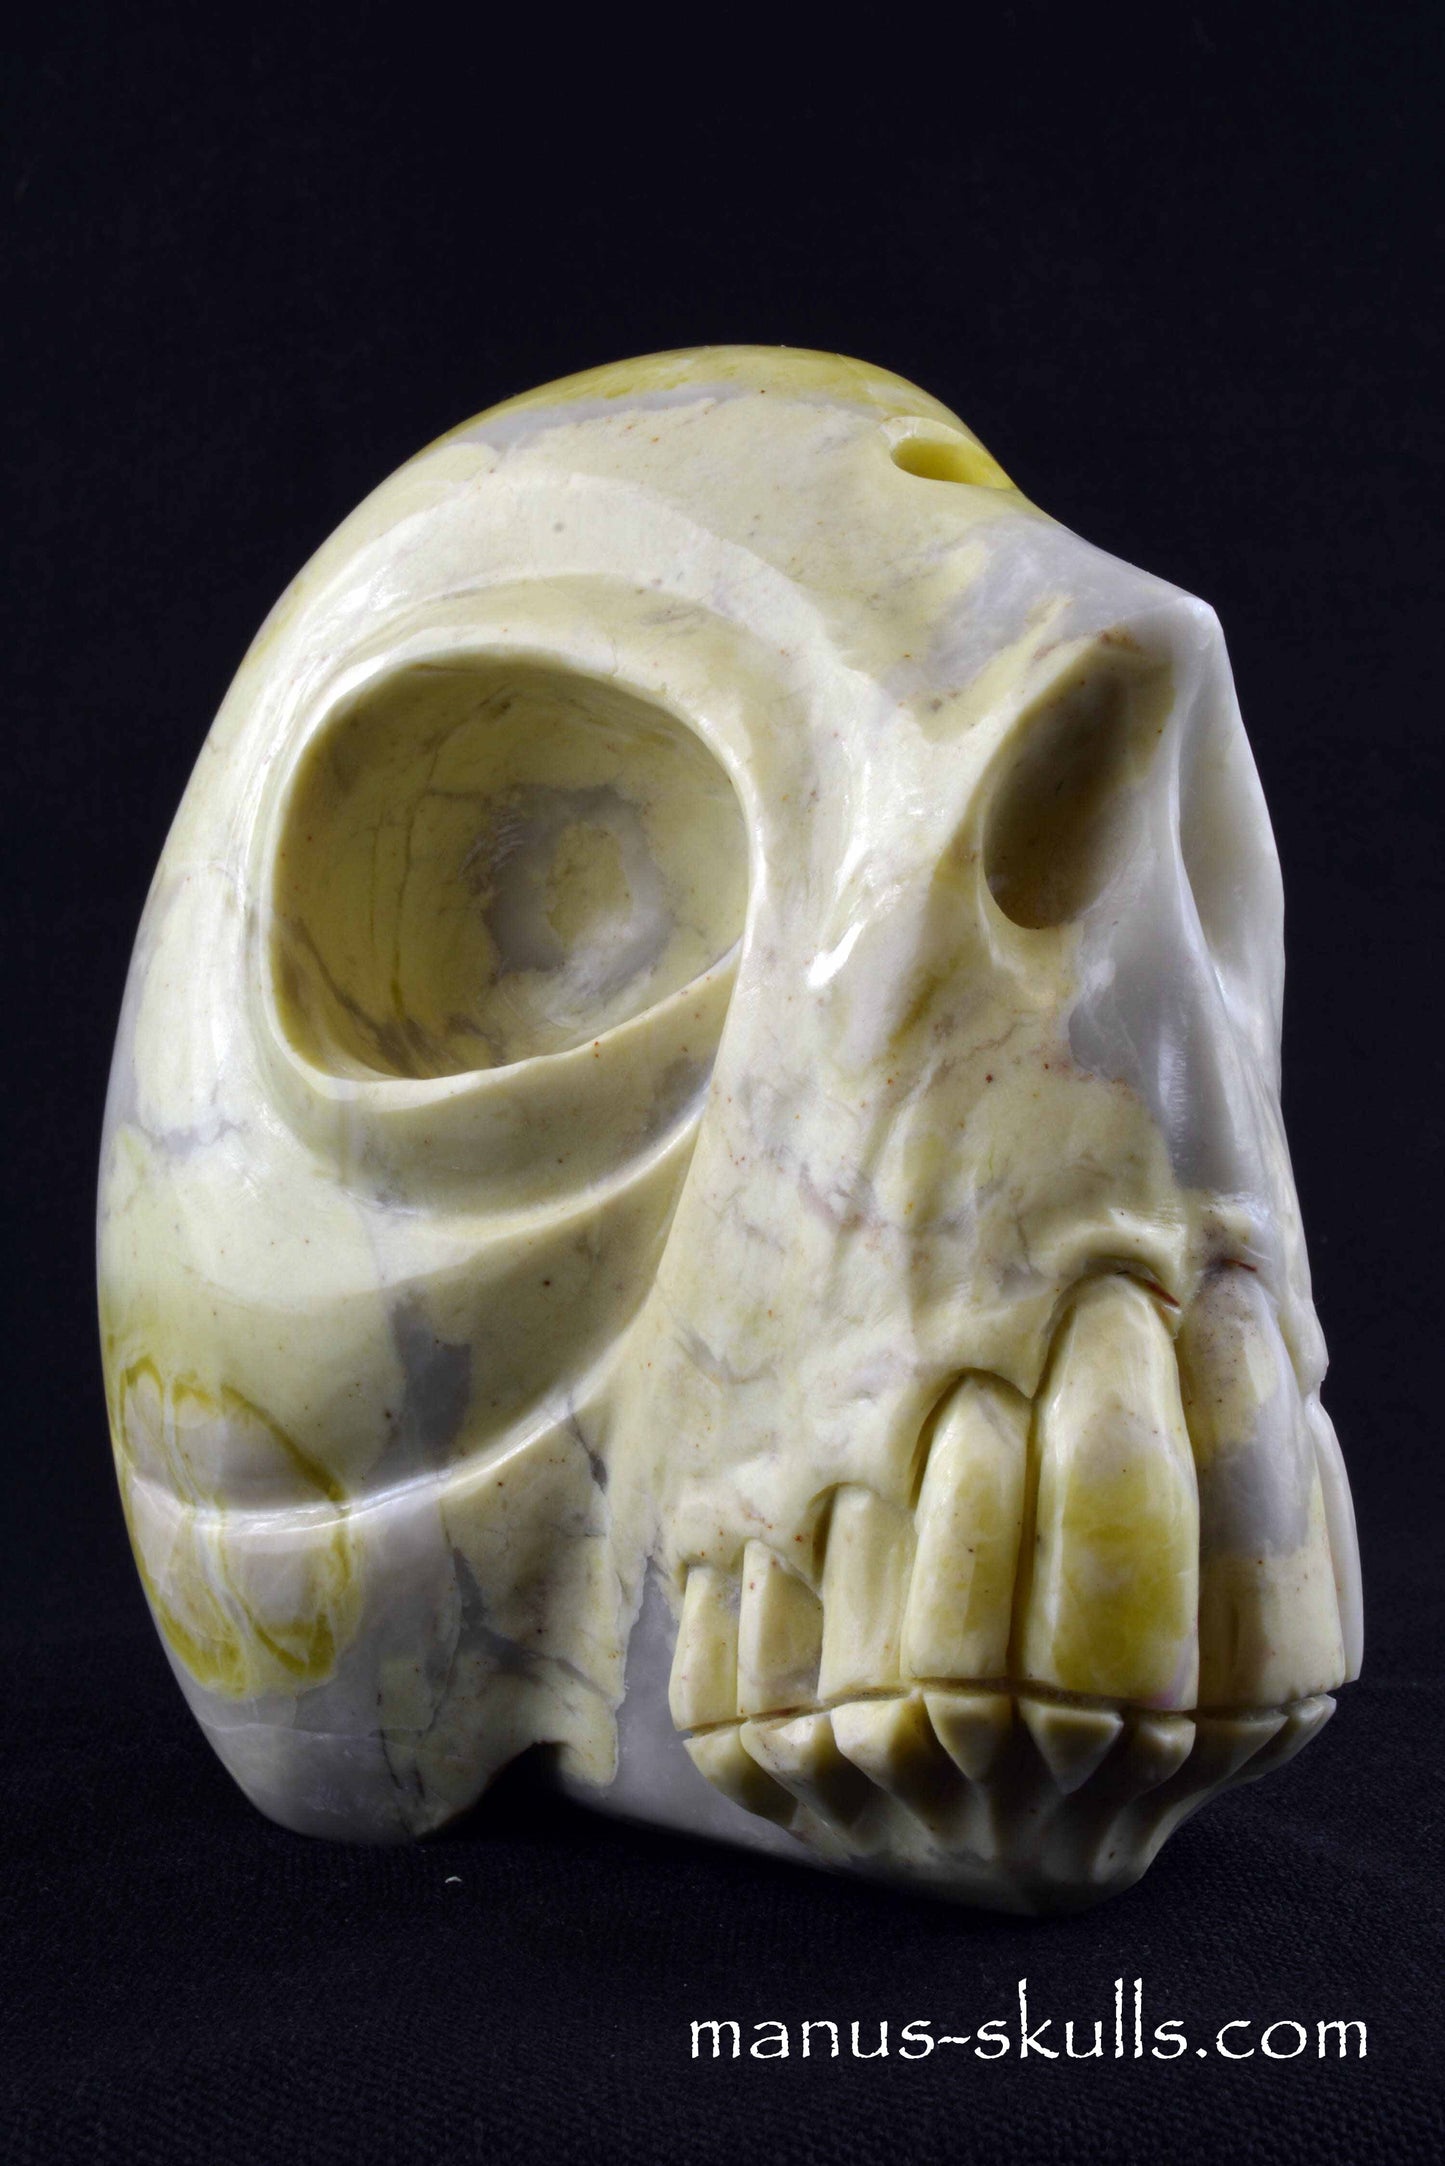 Connemara Skull